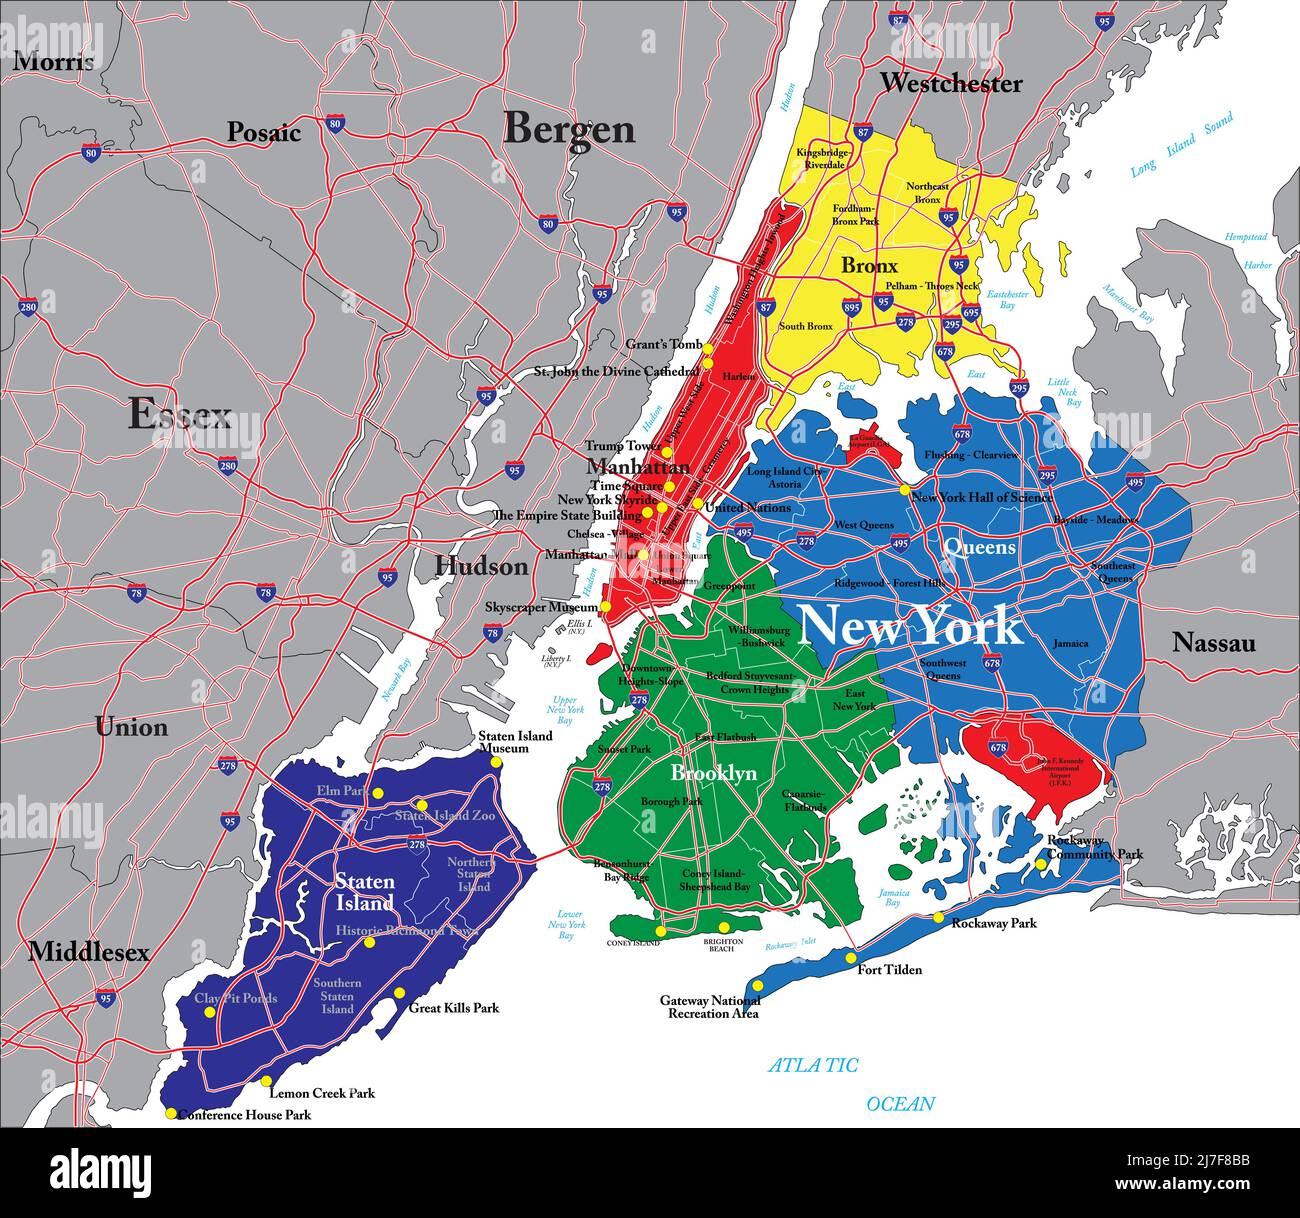 Detailreiche Vektorkarte von New York City mit den fünf Stadtbezirken, der Metropolregion und den Hauptstraßen. Stock Vektor